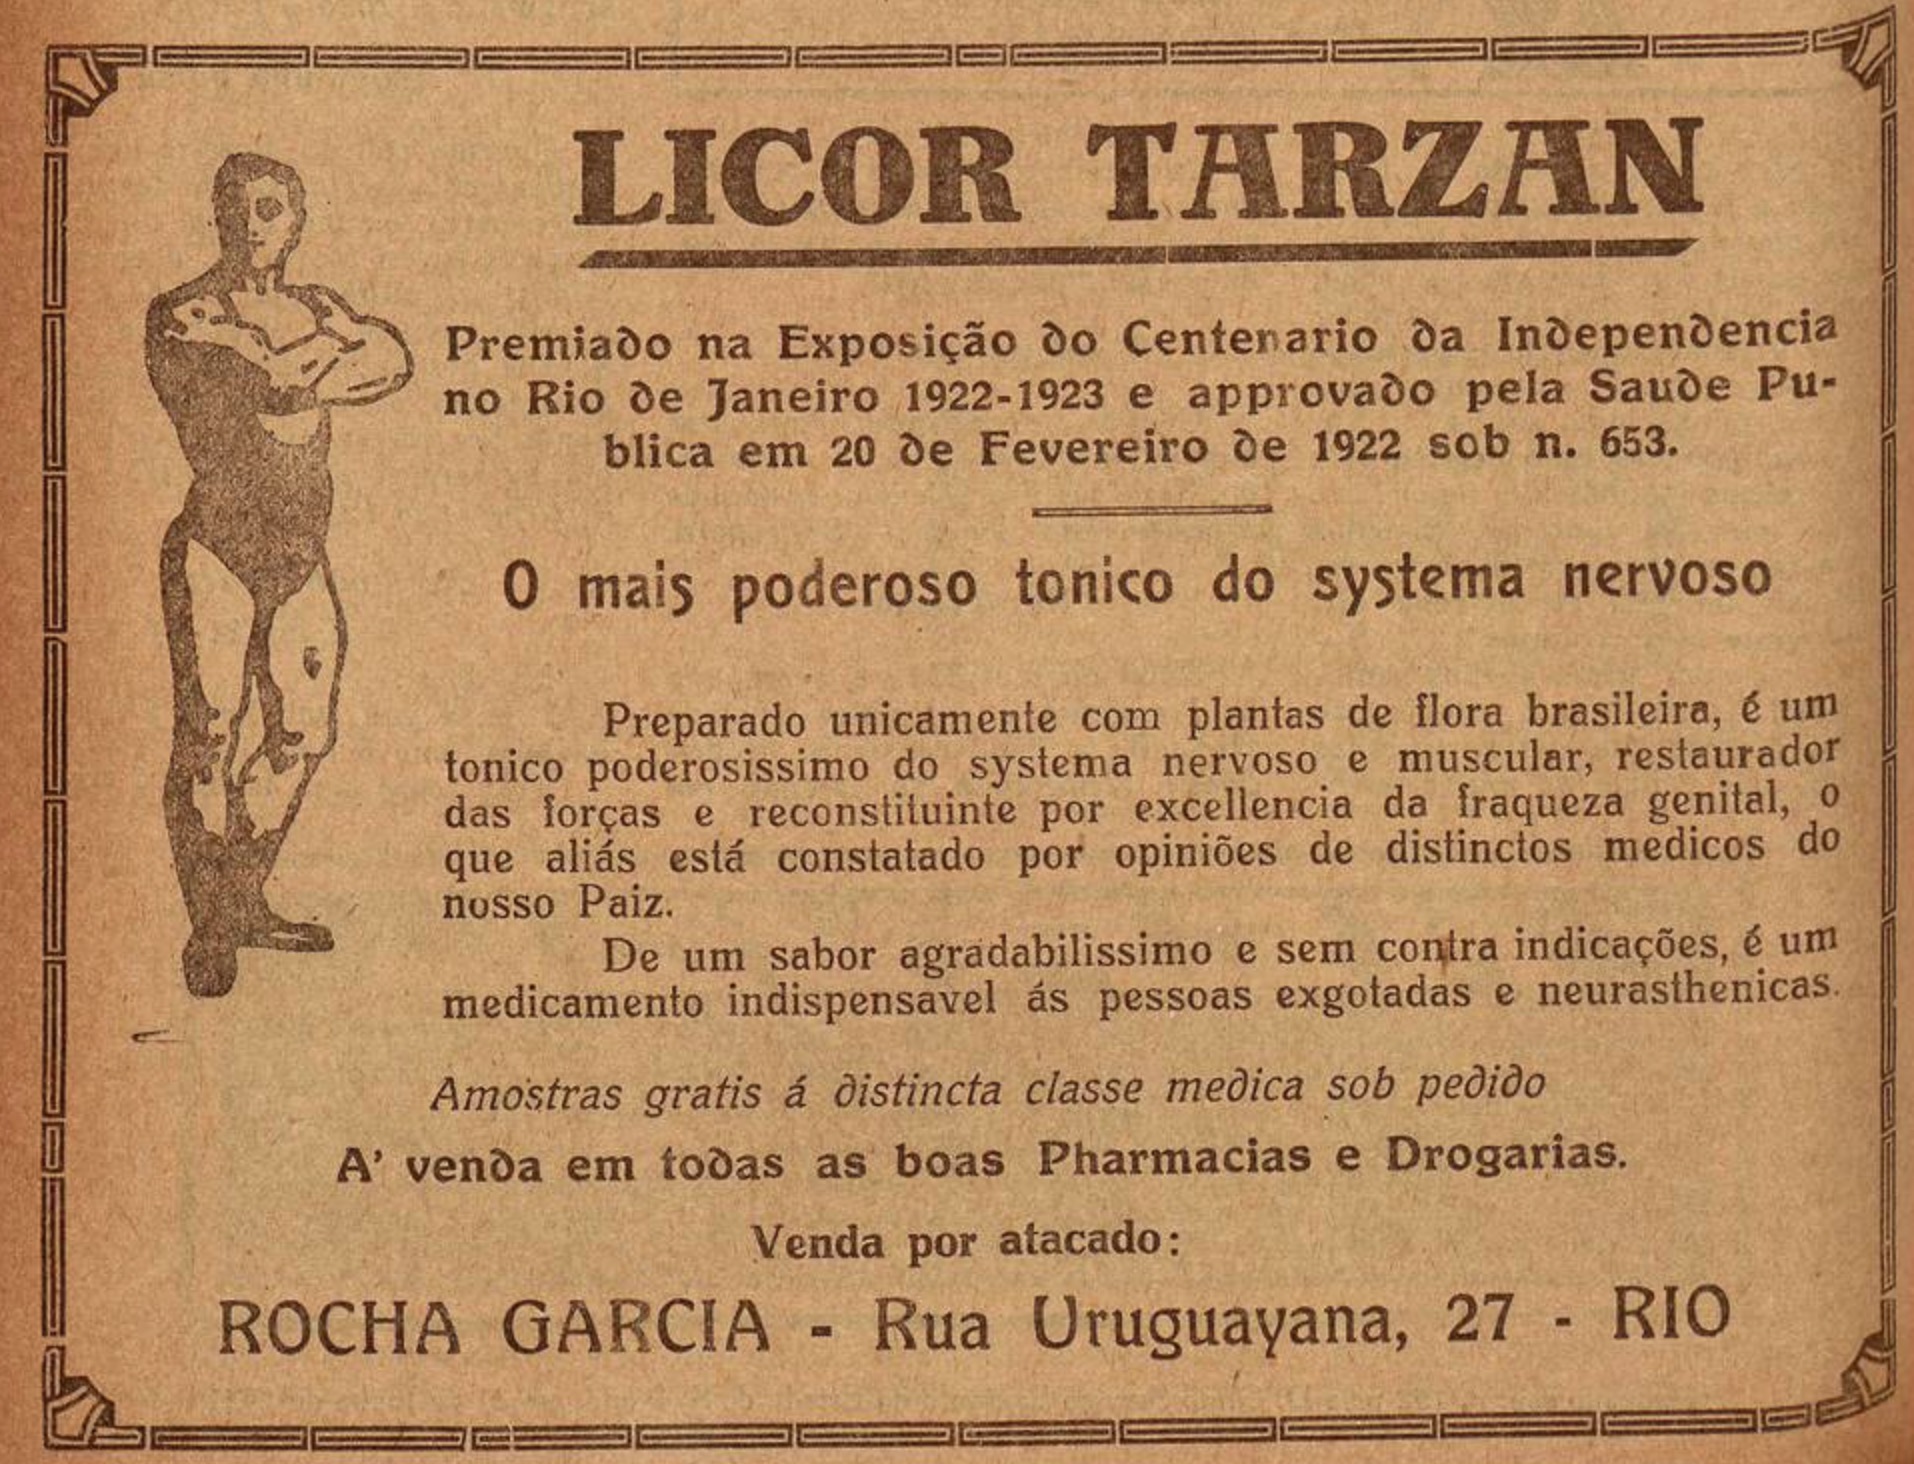 Propaganda antiga veiculada em 1923 promovia os benefícios do Licor Tarzan